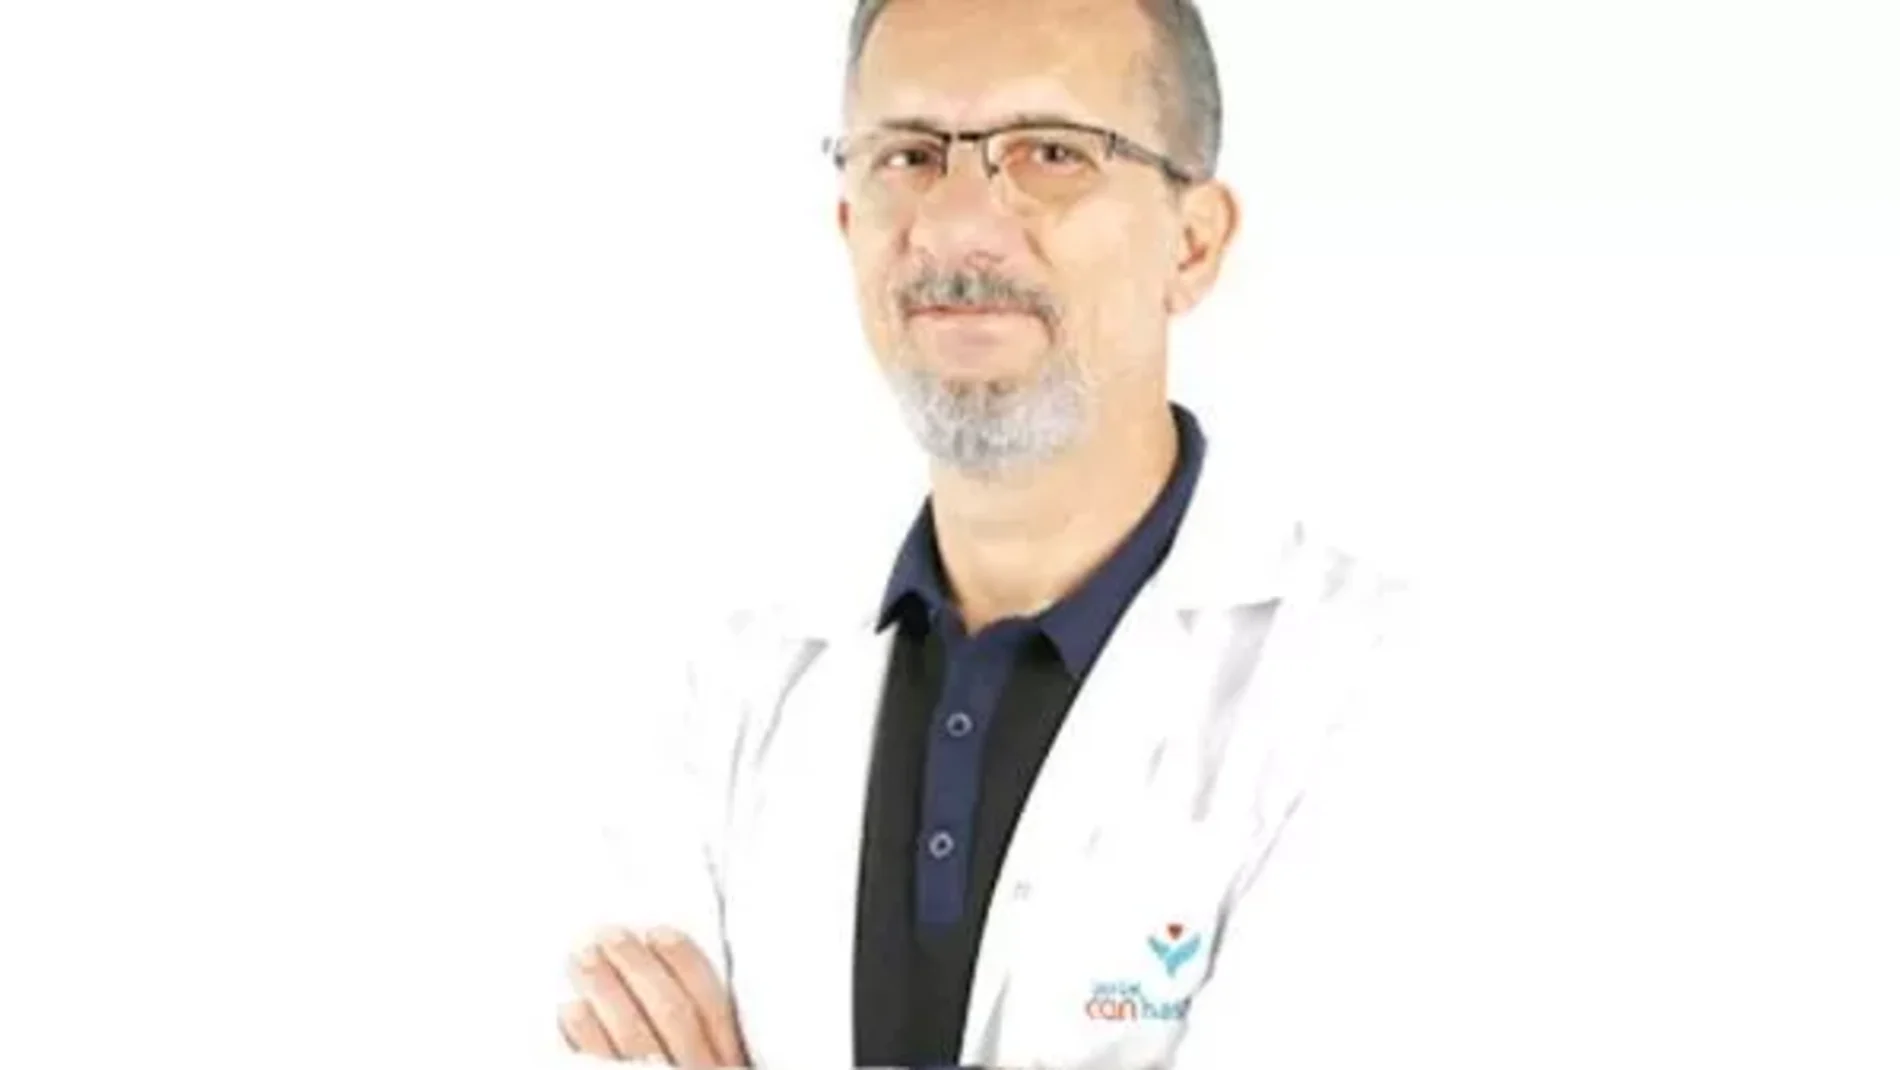 Dr. Ali Vefa Yuceturk